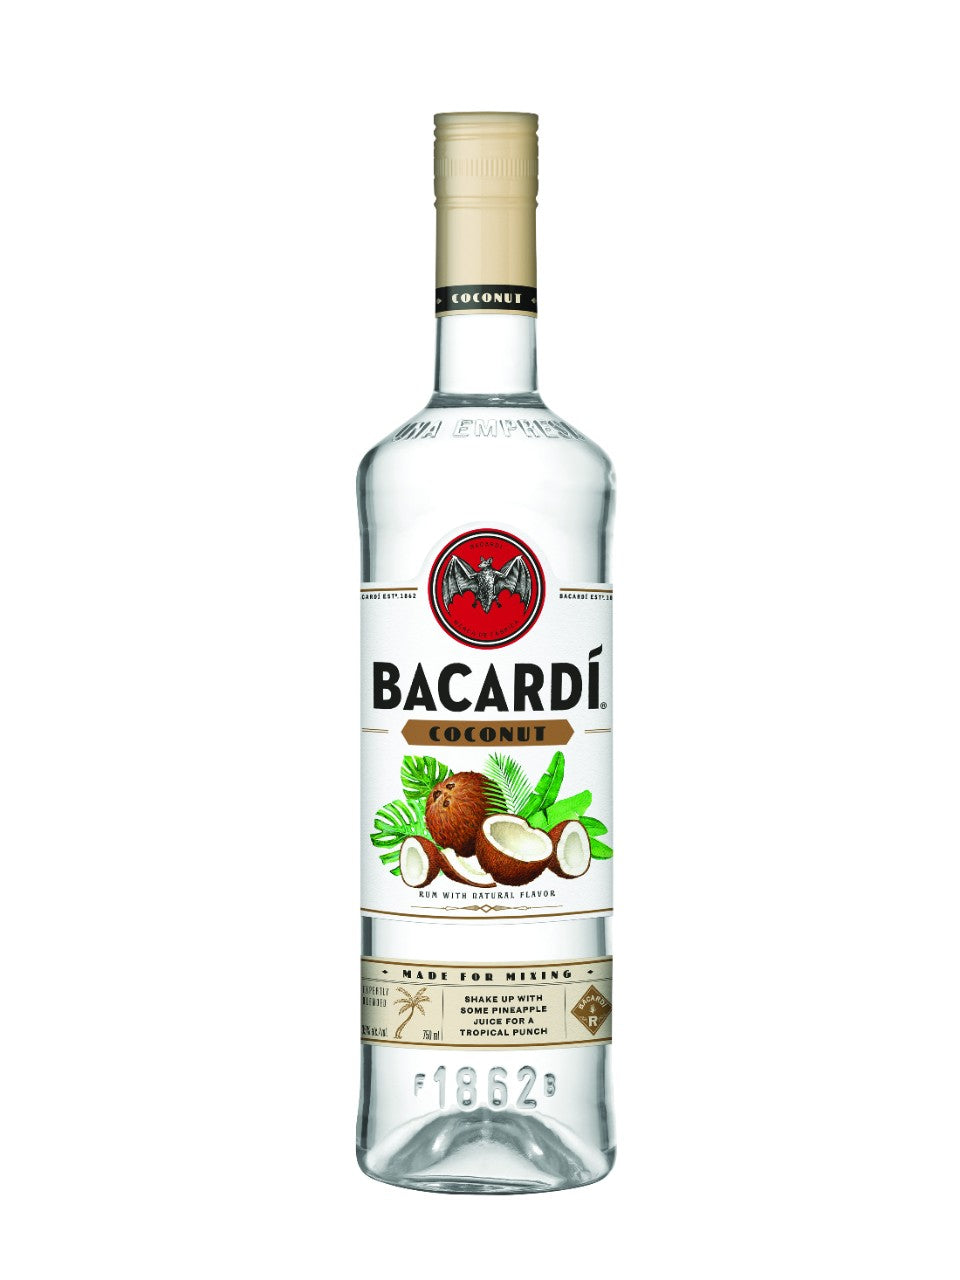 Bacardi Coconut Rum 750 mL bottle